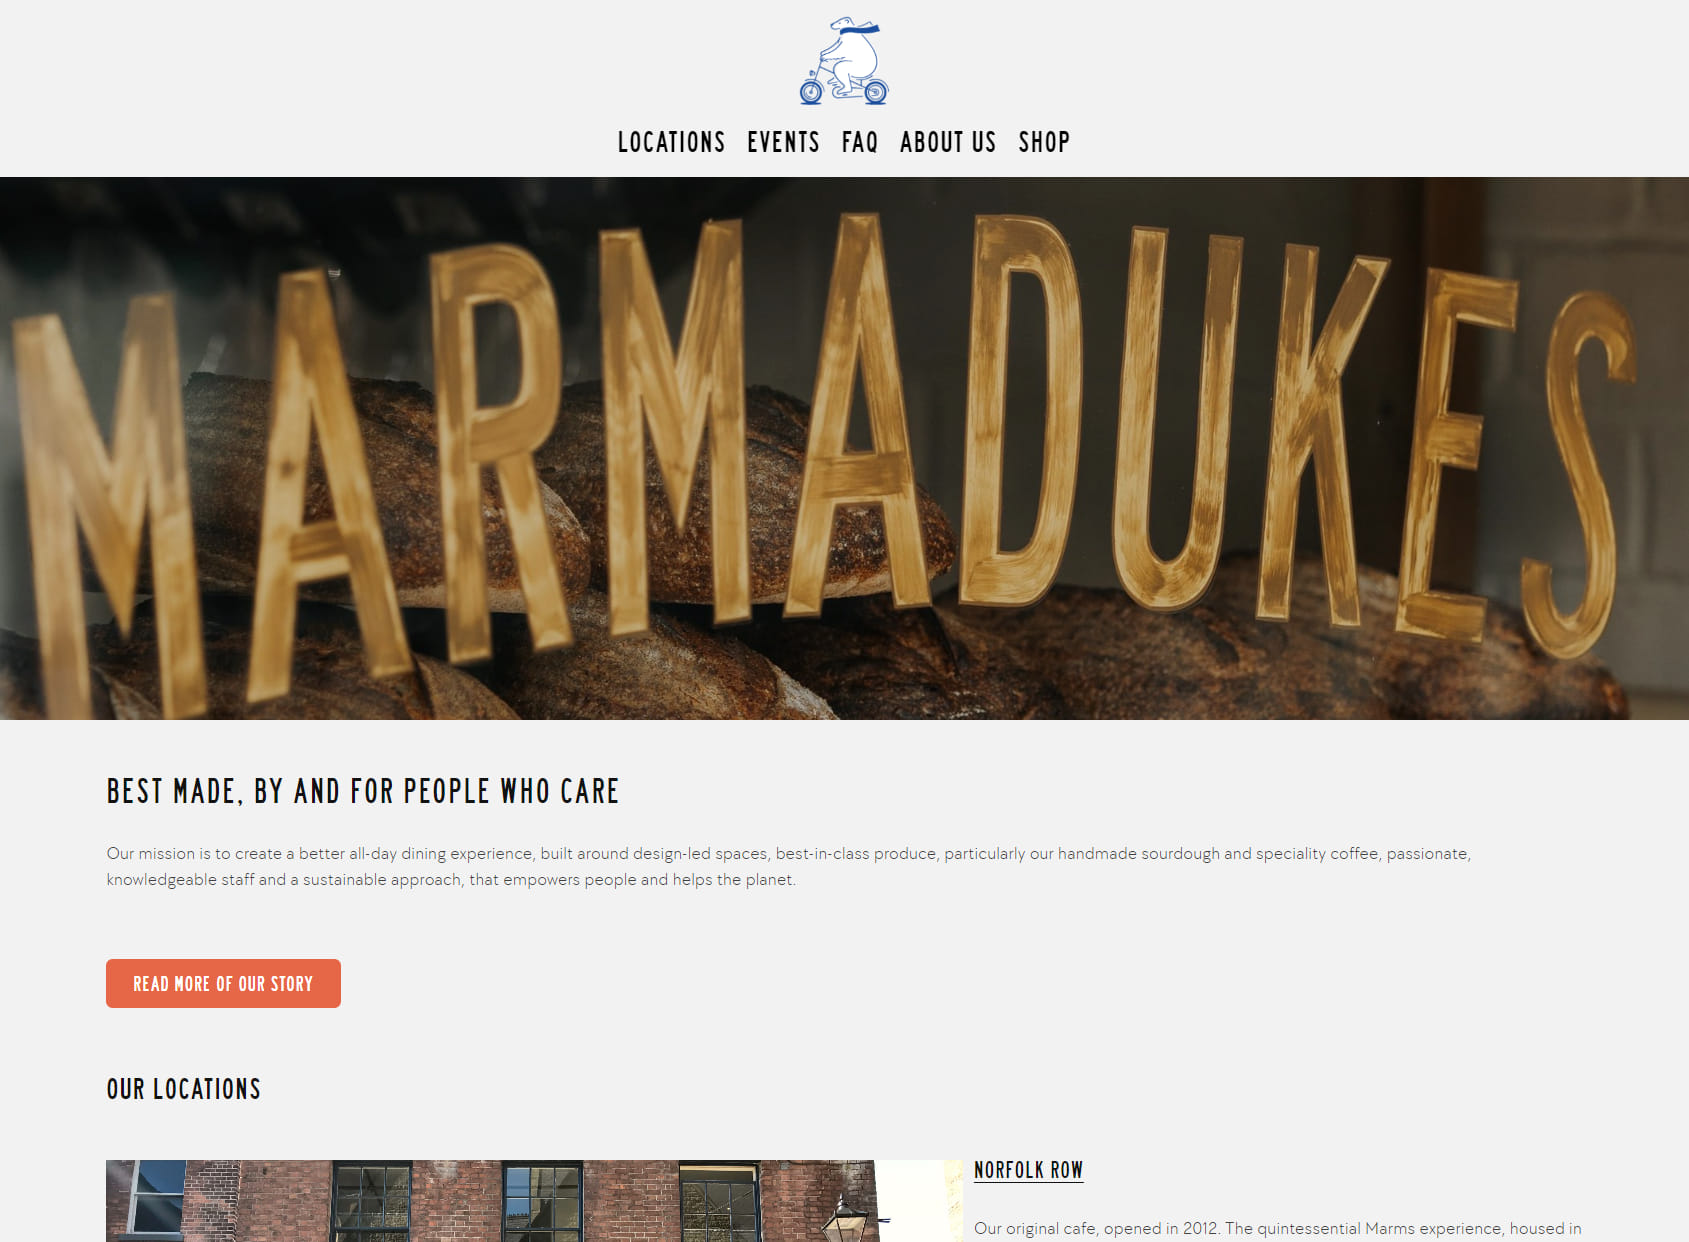 Marmadukes - Norfolk Row